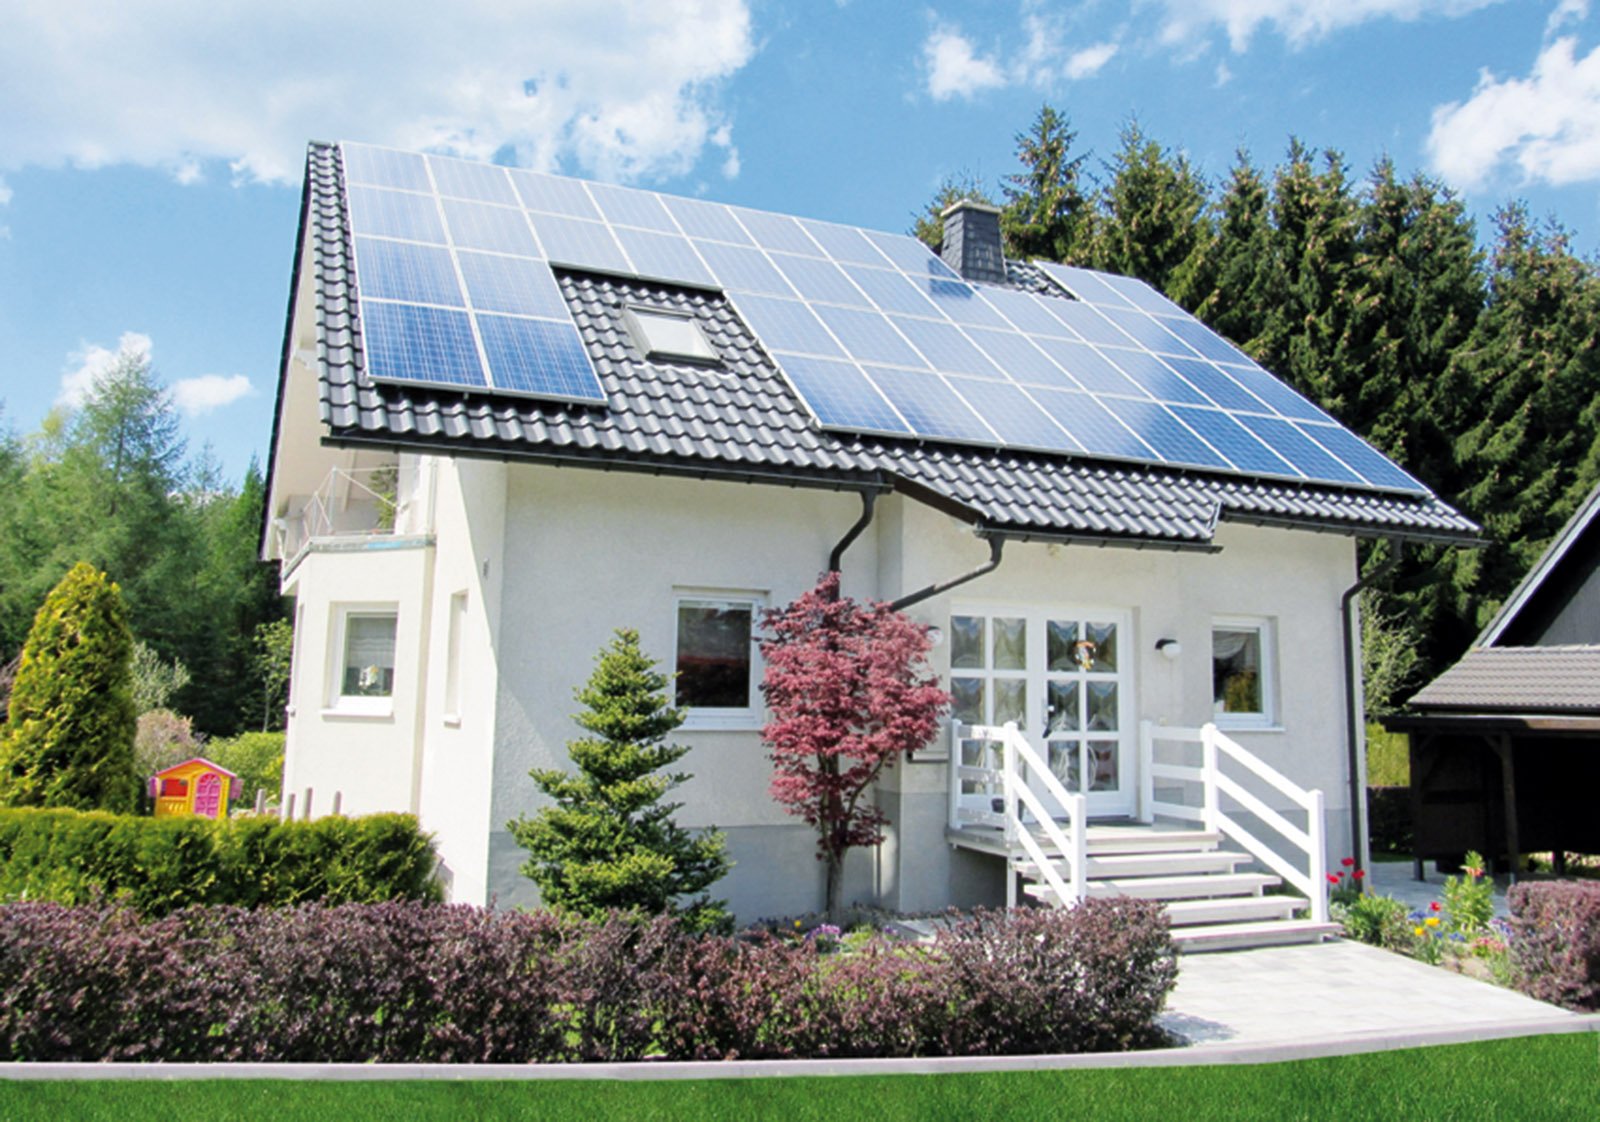 L'impianto fotovoltaico da 3 kW, in promozione da Mr Green fino al 30 novembre 2014, al prezzo di 4.900 euro, Iva e monitoraggio inclusi. www.mr-green.it